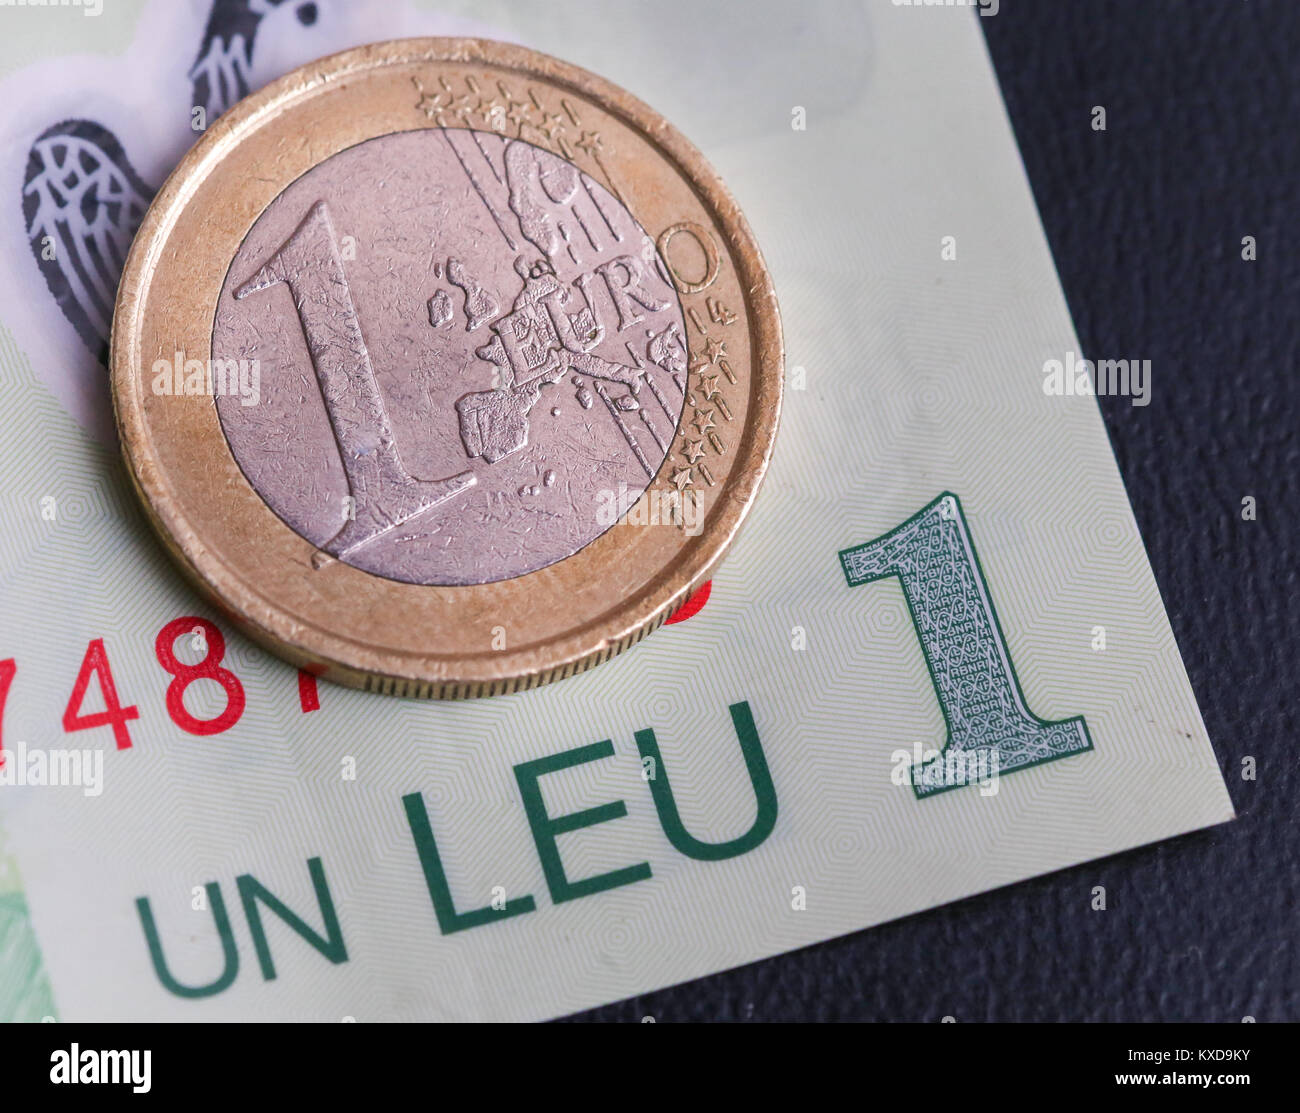 1 euro coin over 1 leu RON bill Stock Photo